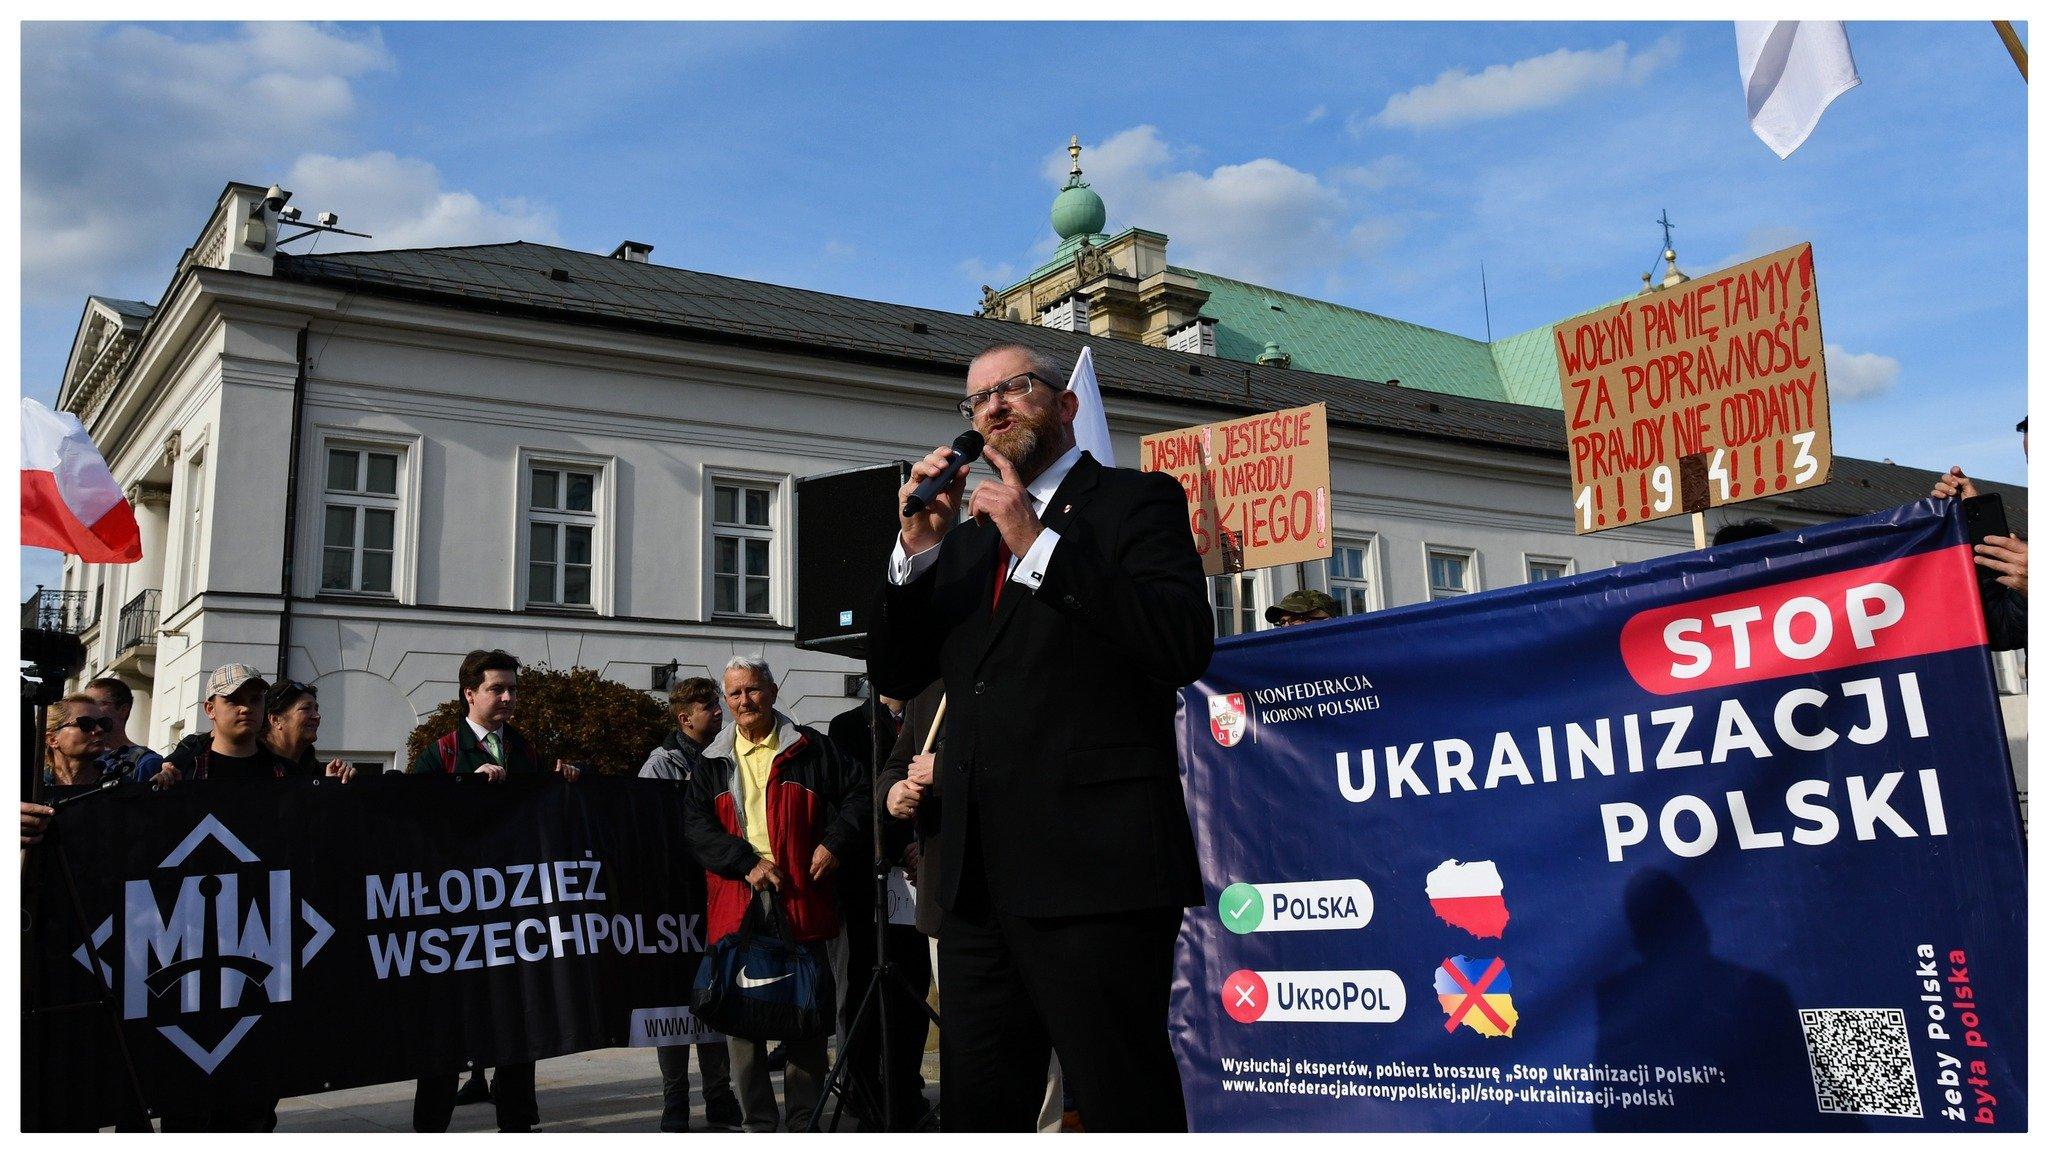 Poseł KOnfederacji Grzegorz Braun stoi z mikrofonem przed transparentem "Ukrainizacja Polski", obok inni ludzie